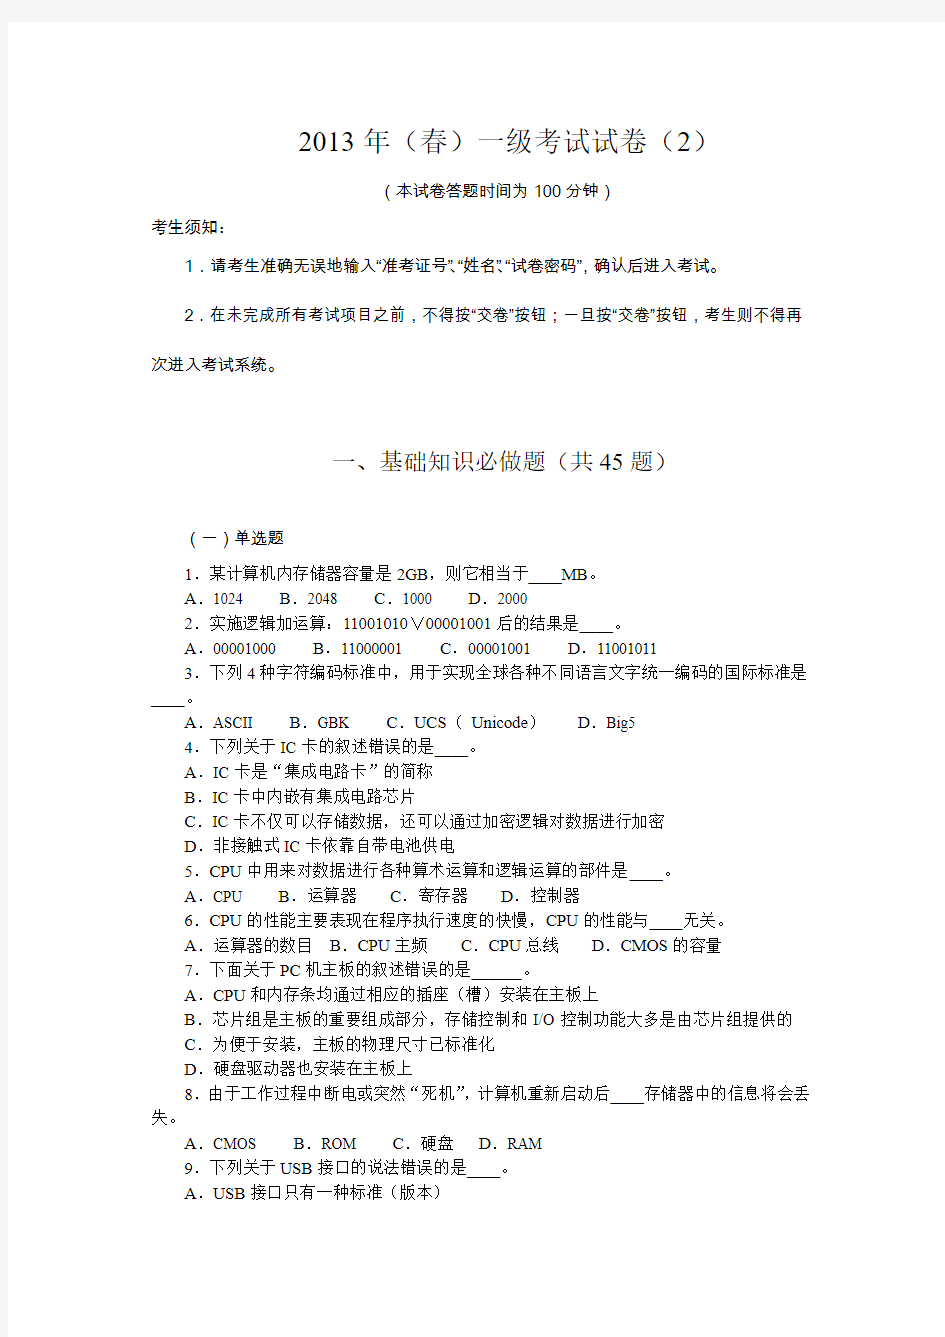 江苏计算机等级考试2013年(春)一级考试试卷 (2)